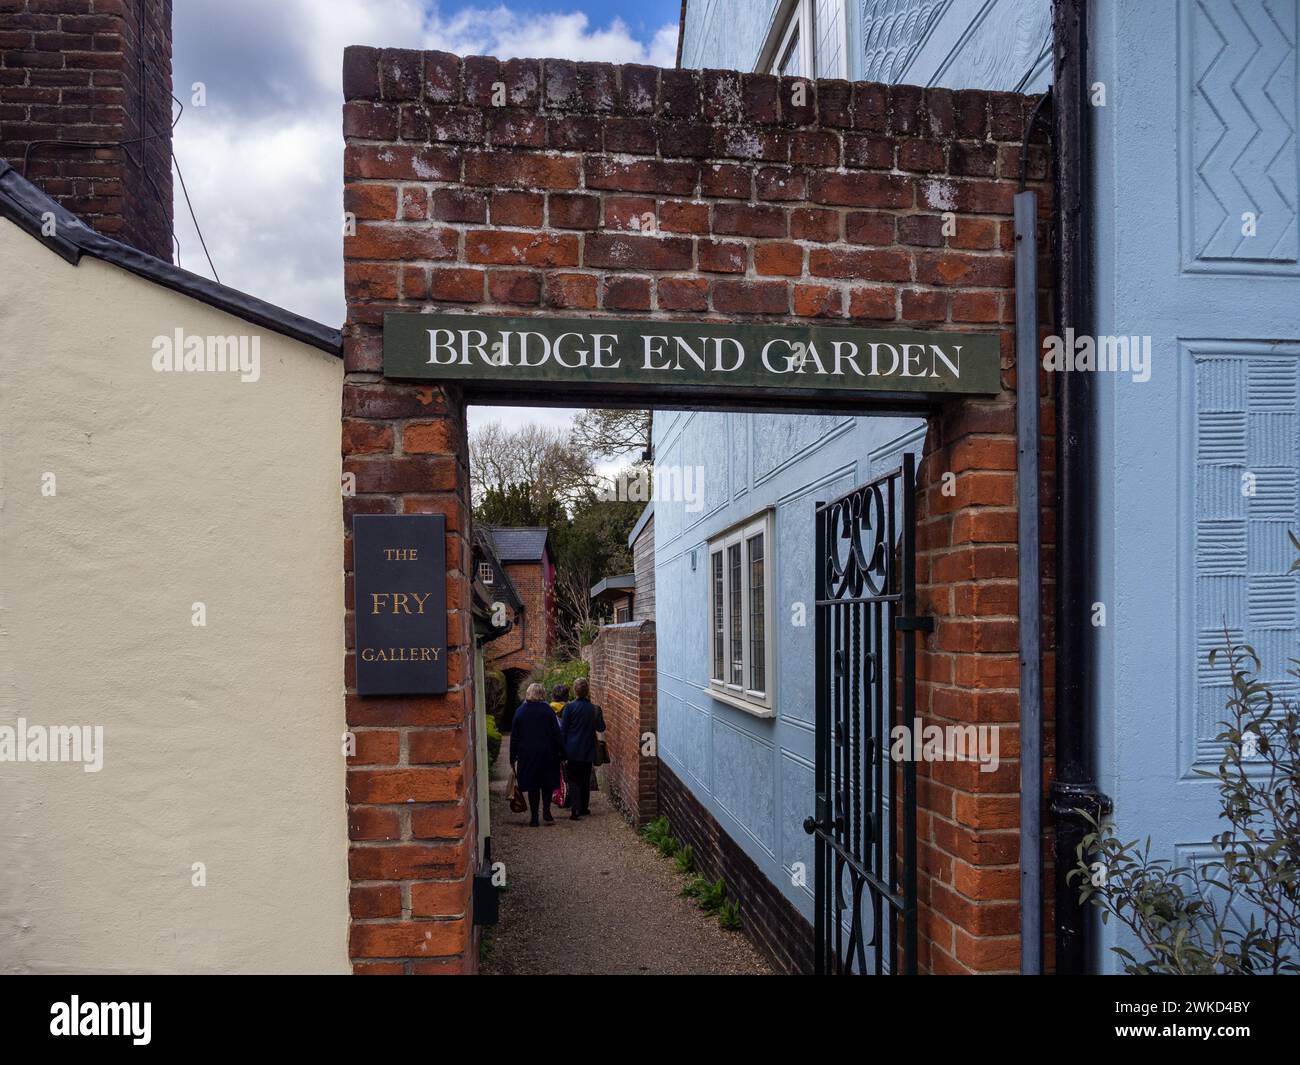 Entrée aux jardins de Bridge End et à la Fry Gallery, près de Castle St, Saffron Walden, Essex. Banque D'Images